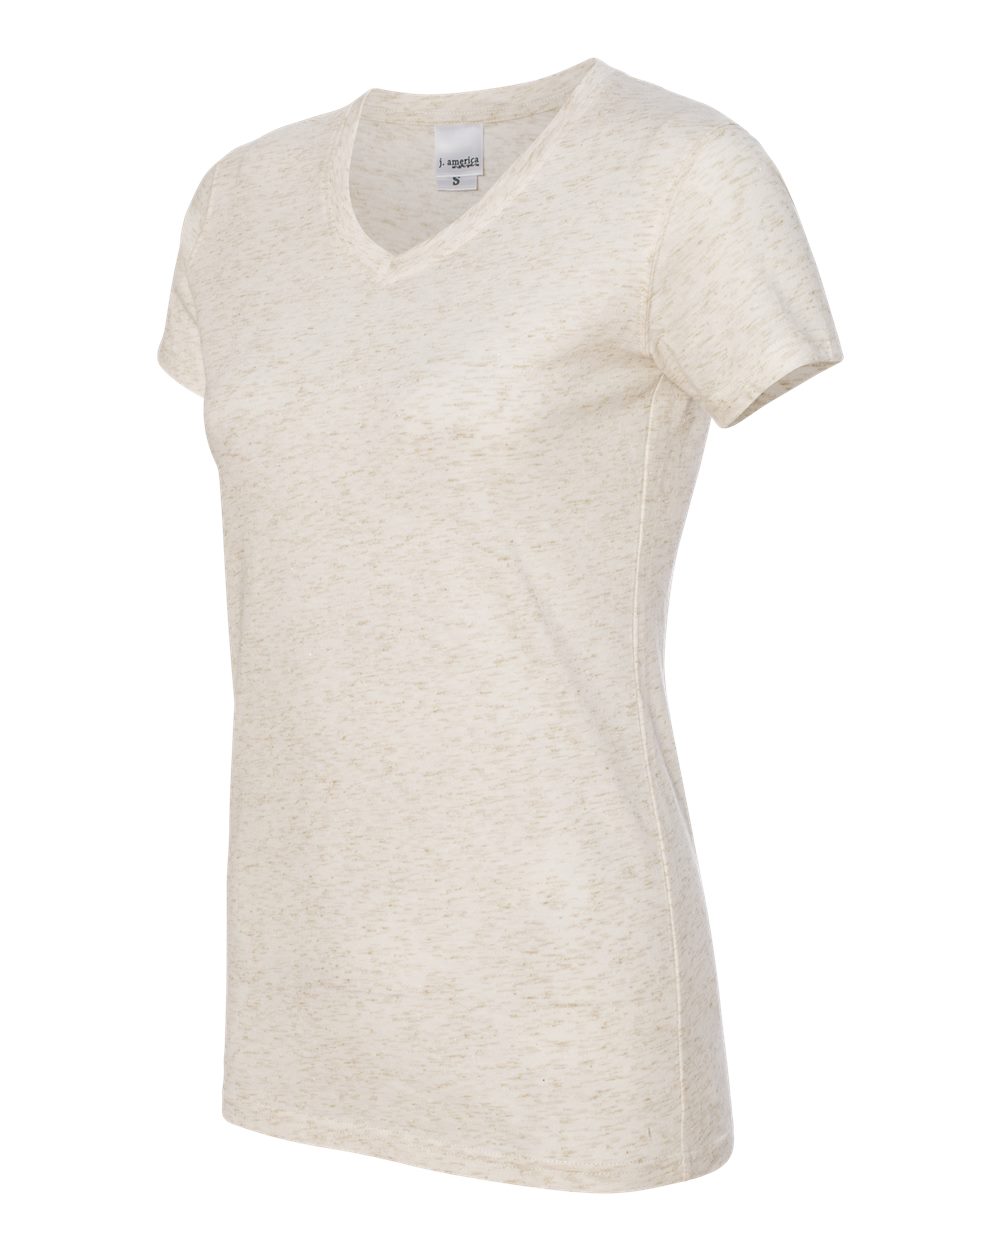 J. America 8136 - Women's Glitter V-Neck T-Shirt